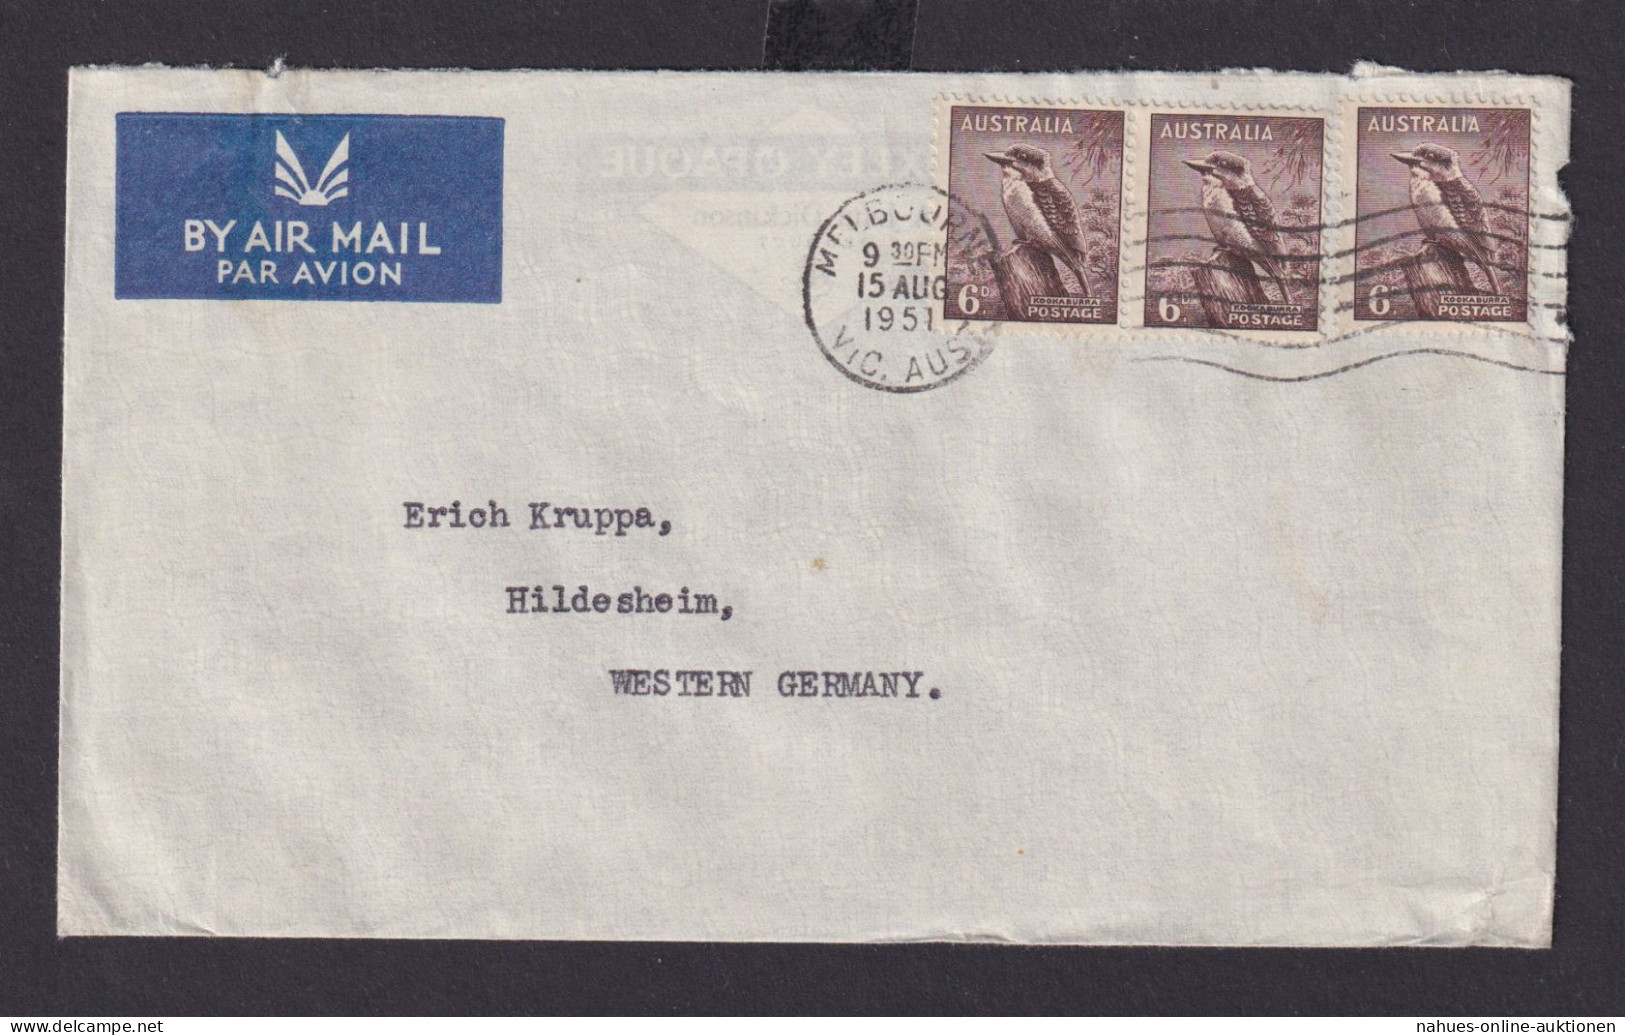 Australien Flugpost Airmail MEF 6d Tiere Vögel Melbourne Hildesheim 15.8.1951 - Sammlungen